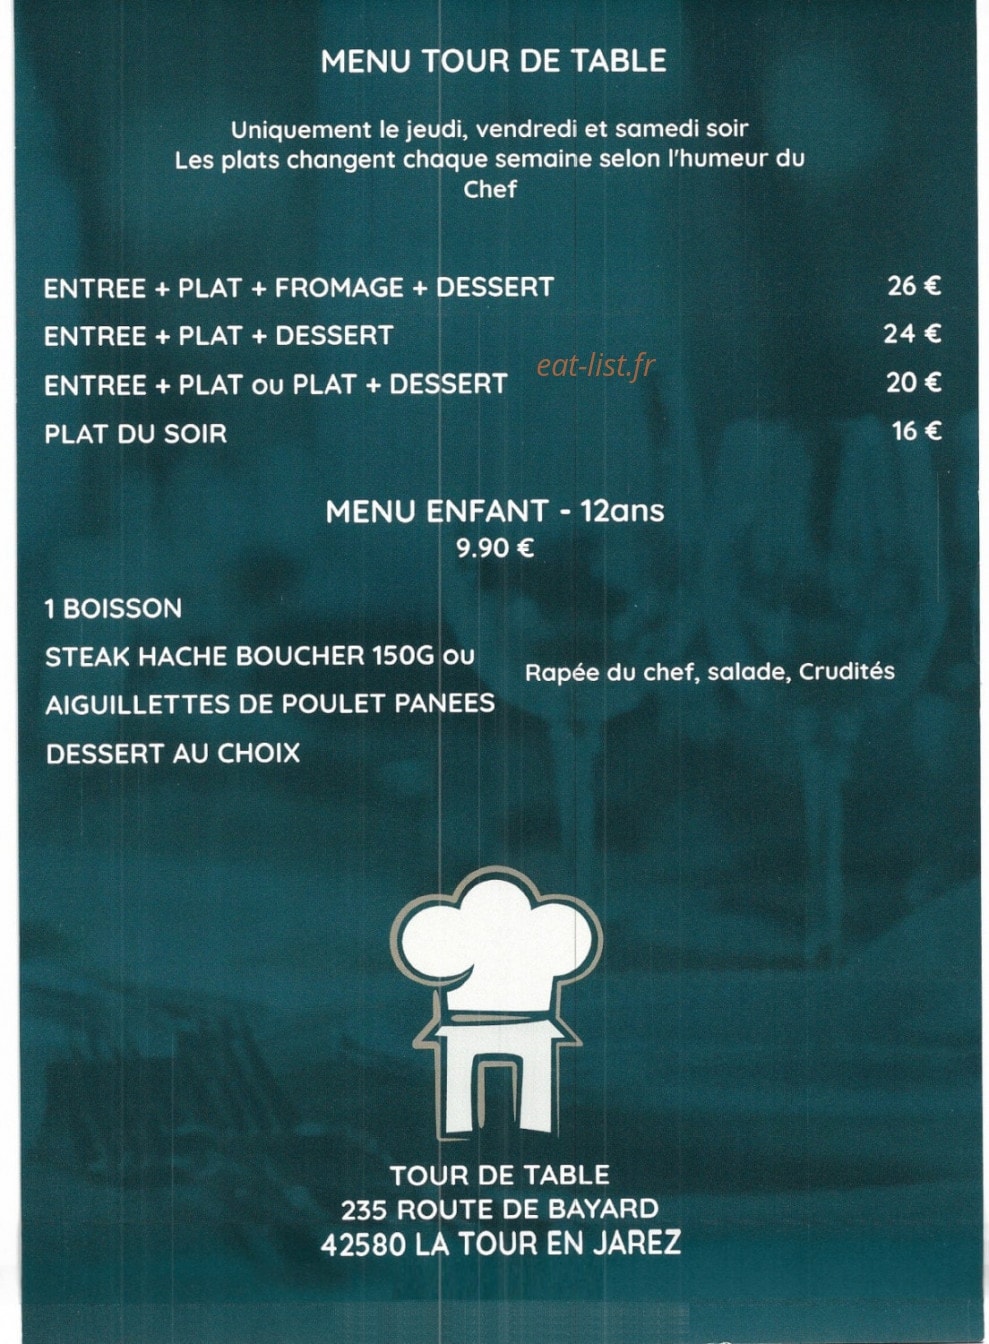 Menu Tour De Table - Le menu tour de table et menu enfant